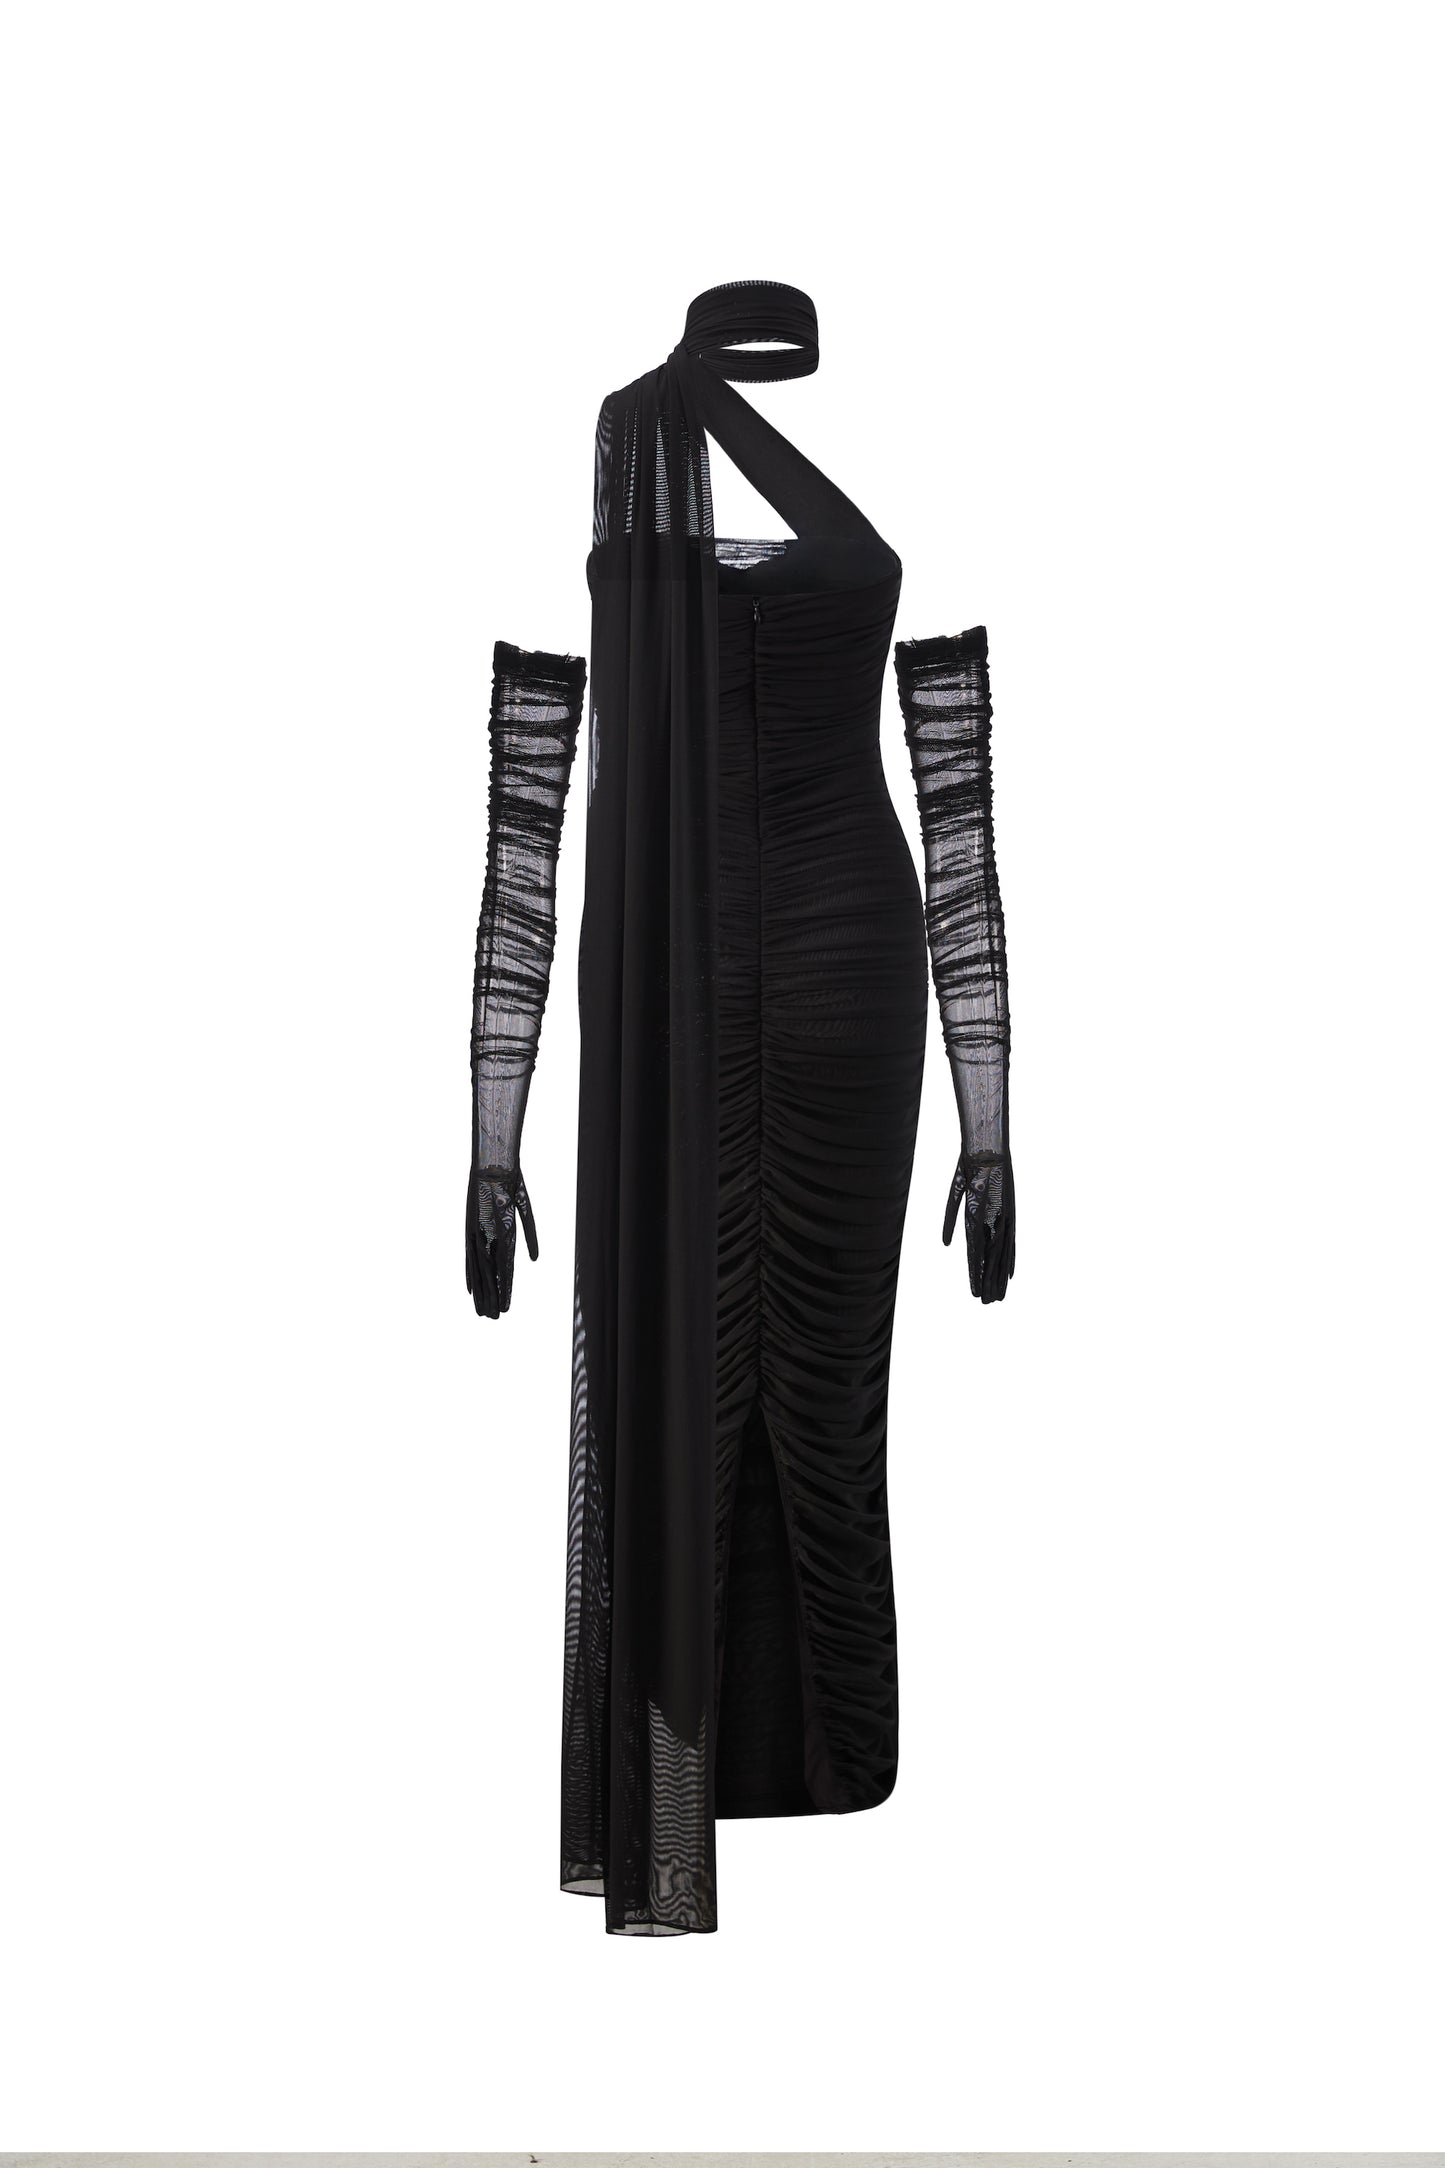 Gia Dress (Black)